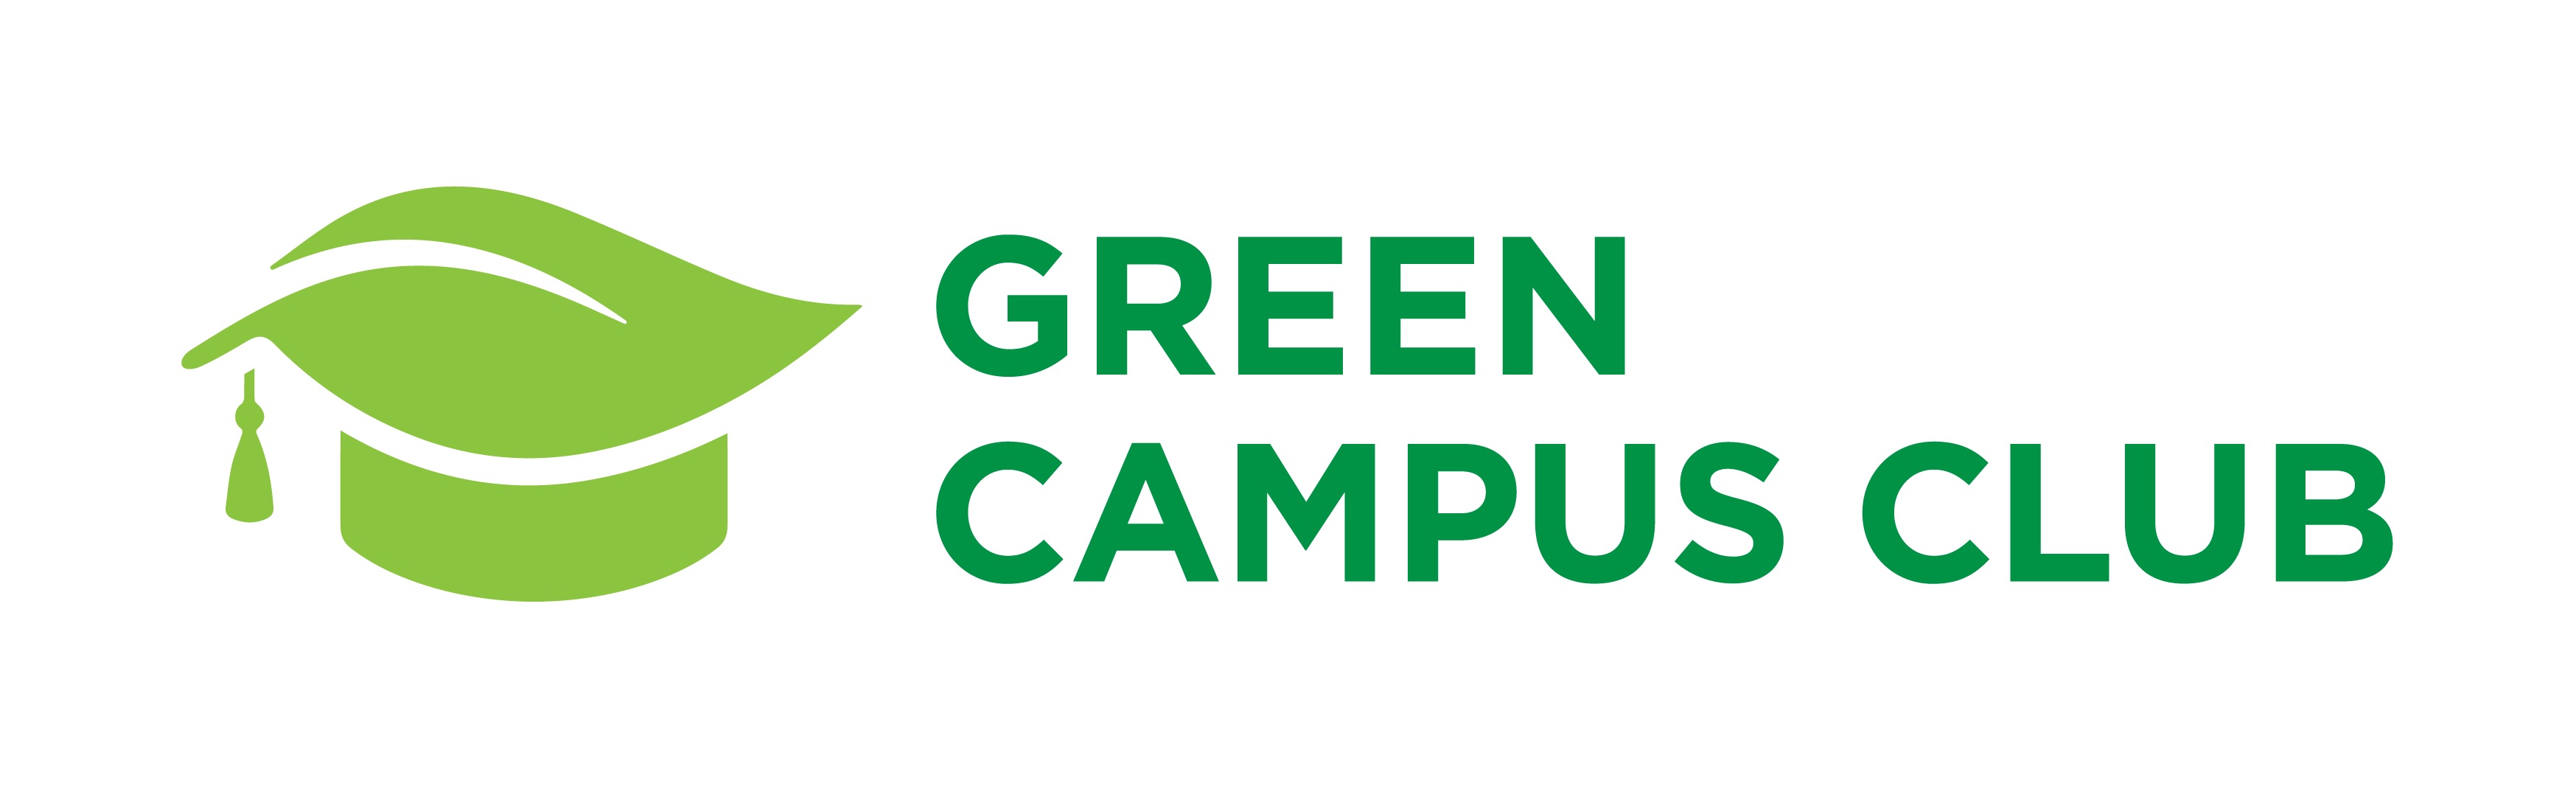 Green Campus Club Logo